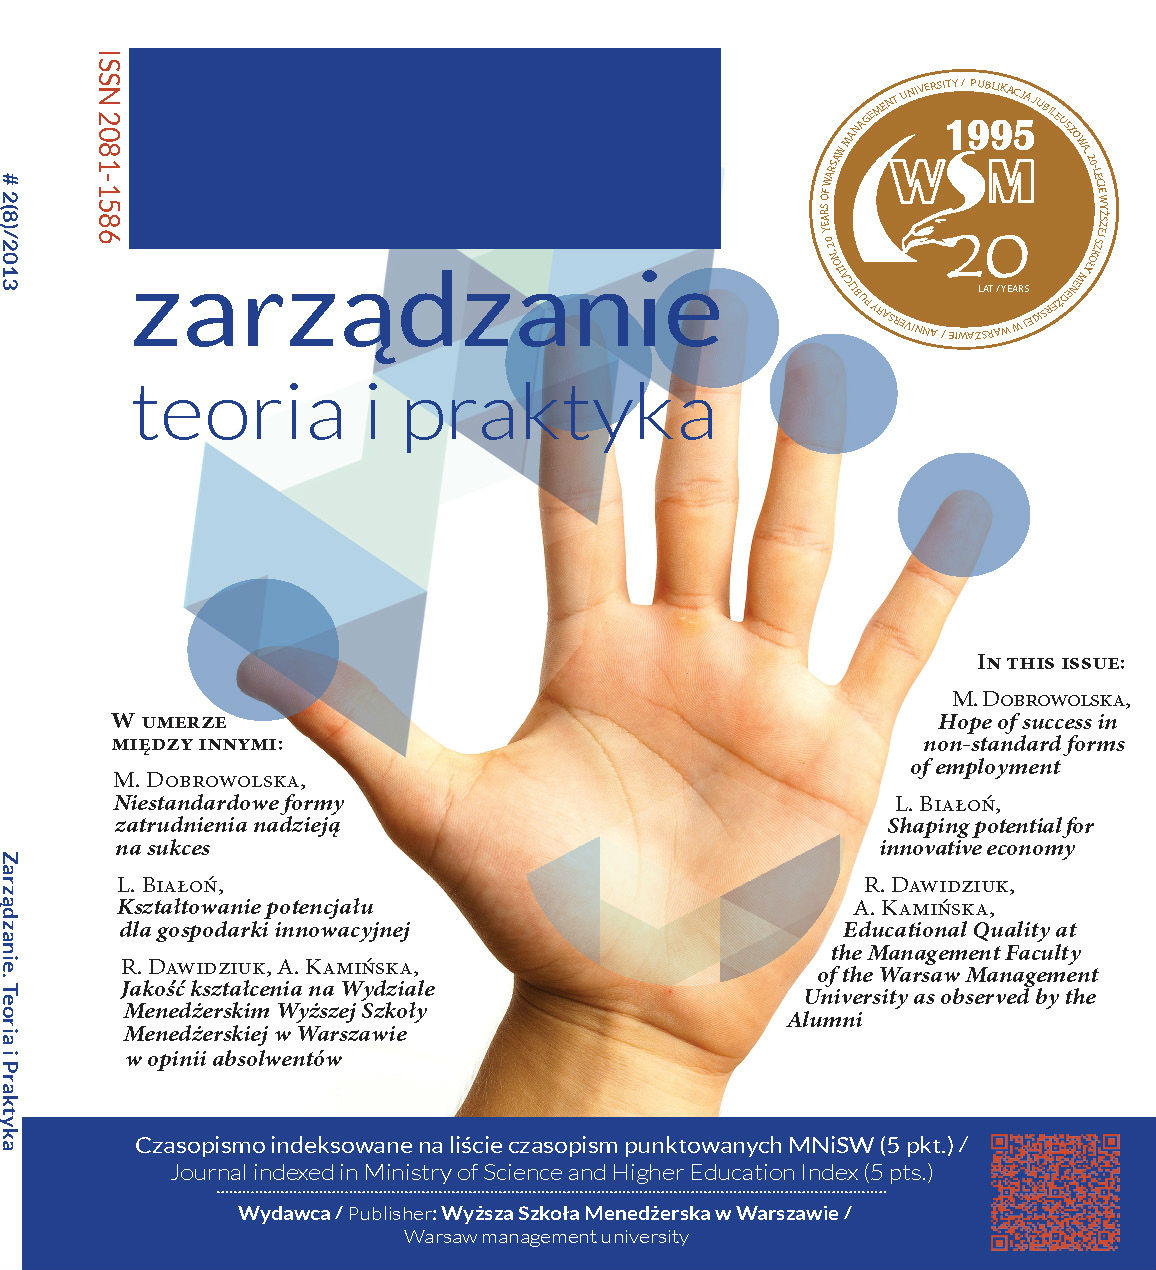 Irena Lichniak (red.), Determinanty rozwoju przedsiębiorczości w Polsce, Oficyna Wydawnicza Szkoła Główna Handlowa w Warszawie, Warszawa 2011. Cover Image